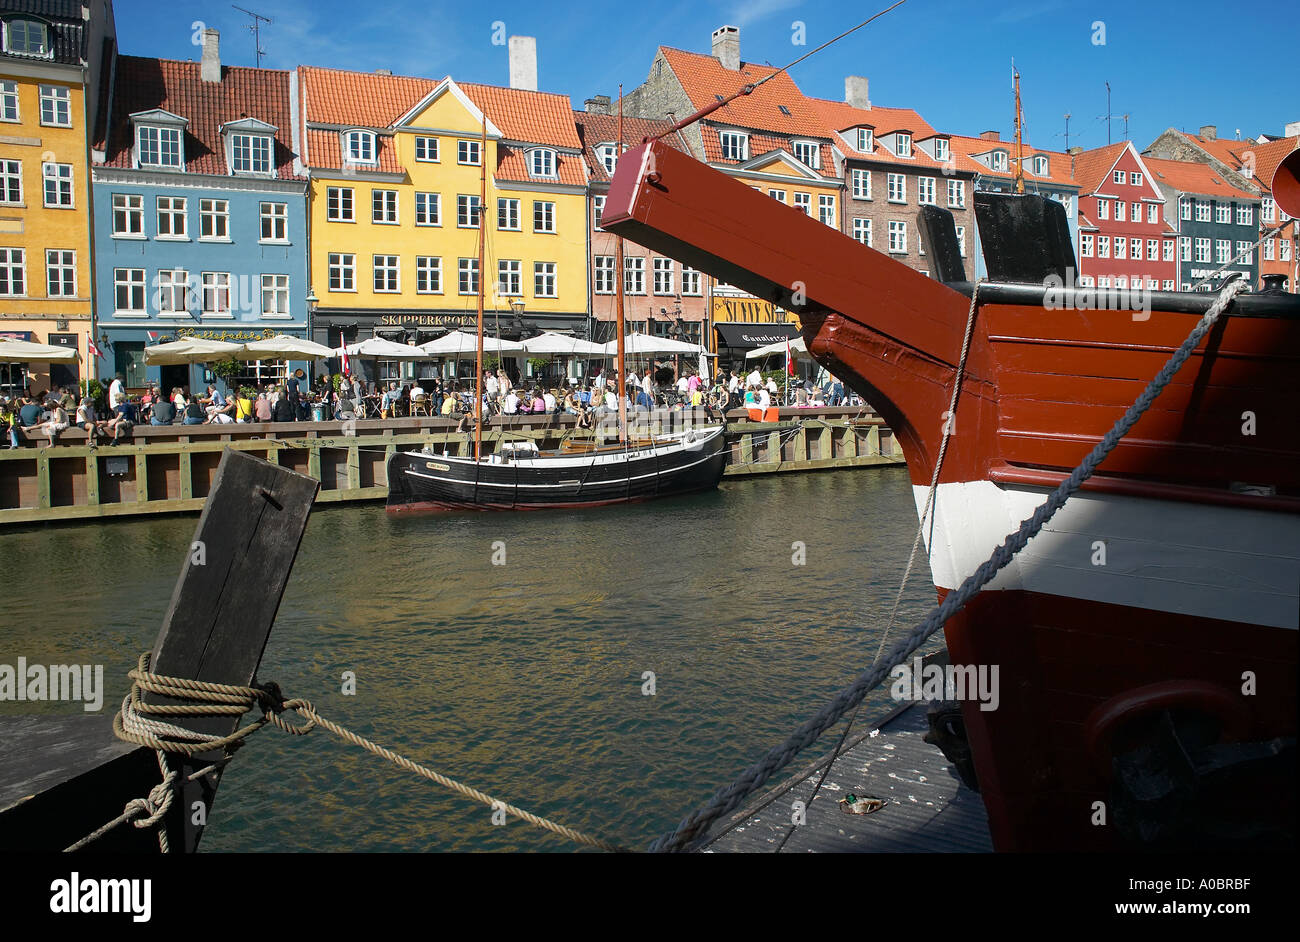 Festgemachten Segelbooten und überfüllten Kai Café-Terrassen, Nyhavn, Kopenhagen, Dänemark Stockfoto